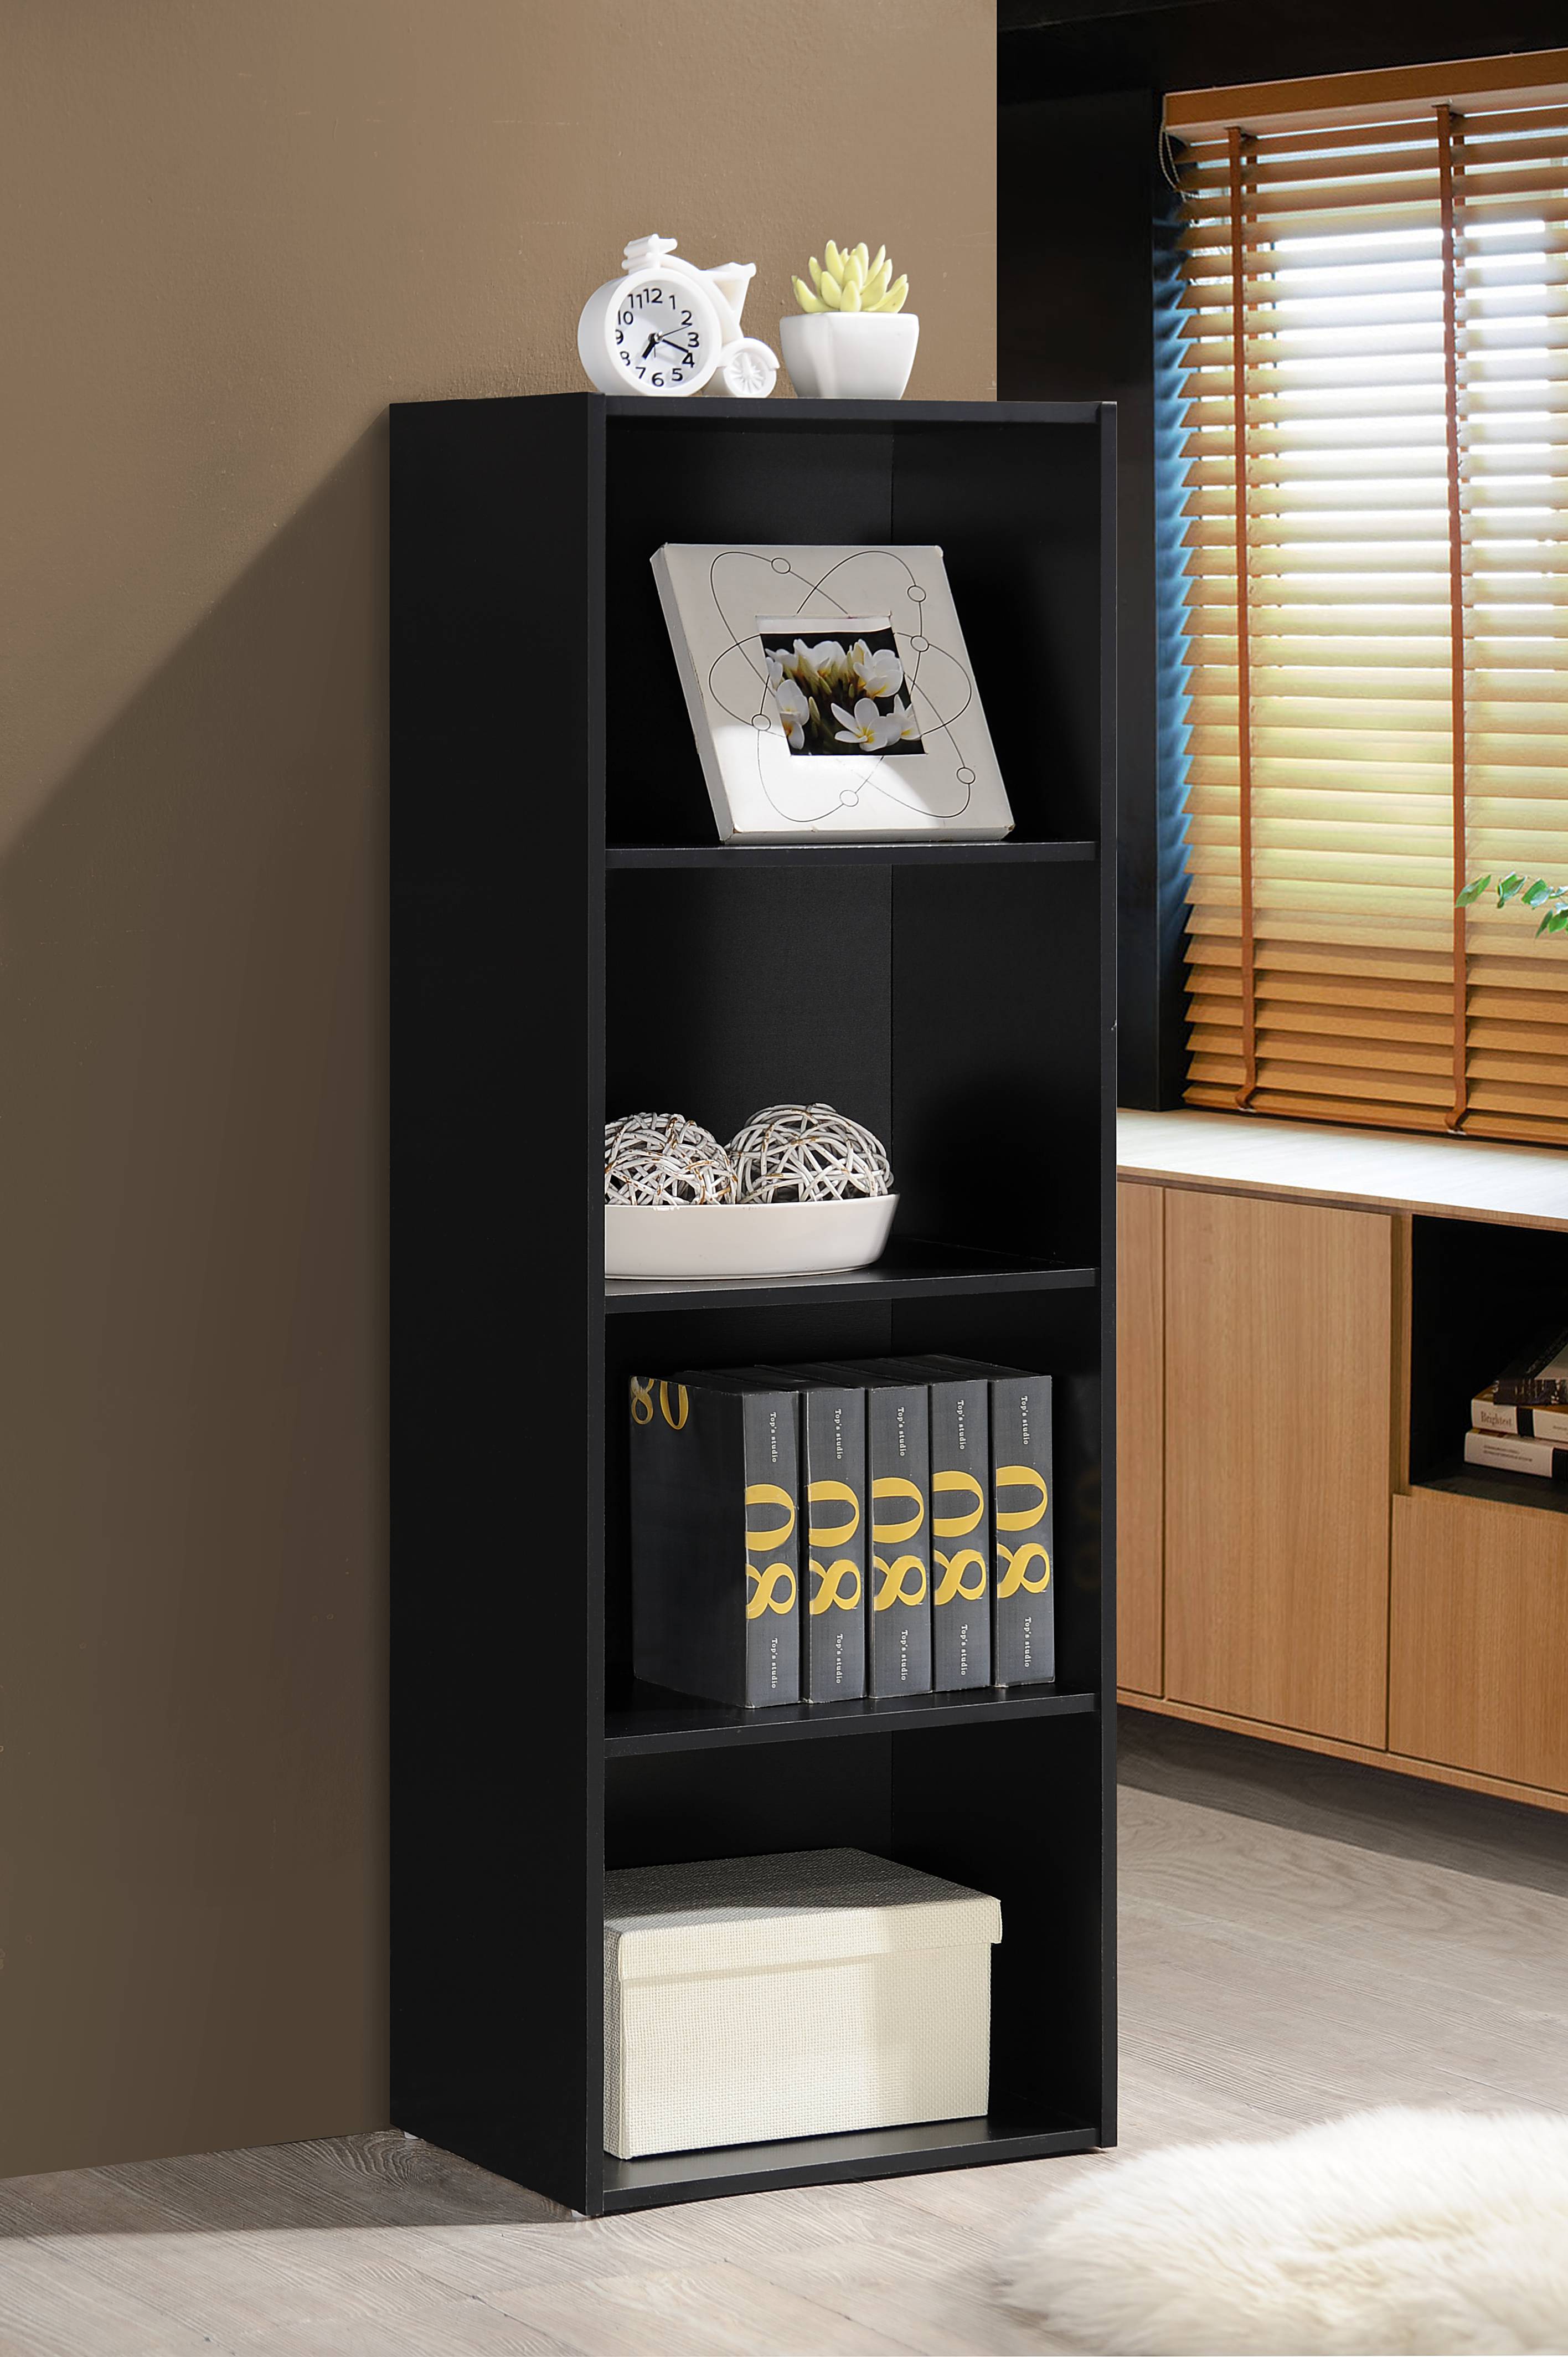 Hodedah 4-Shelf Wood Bookcase, Black - image 2 of 5